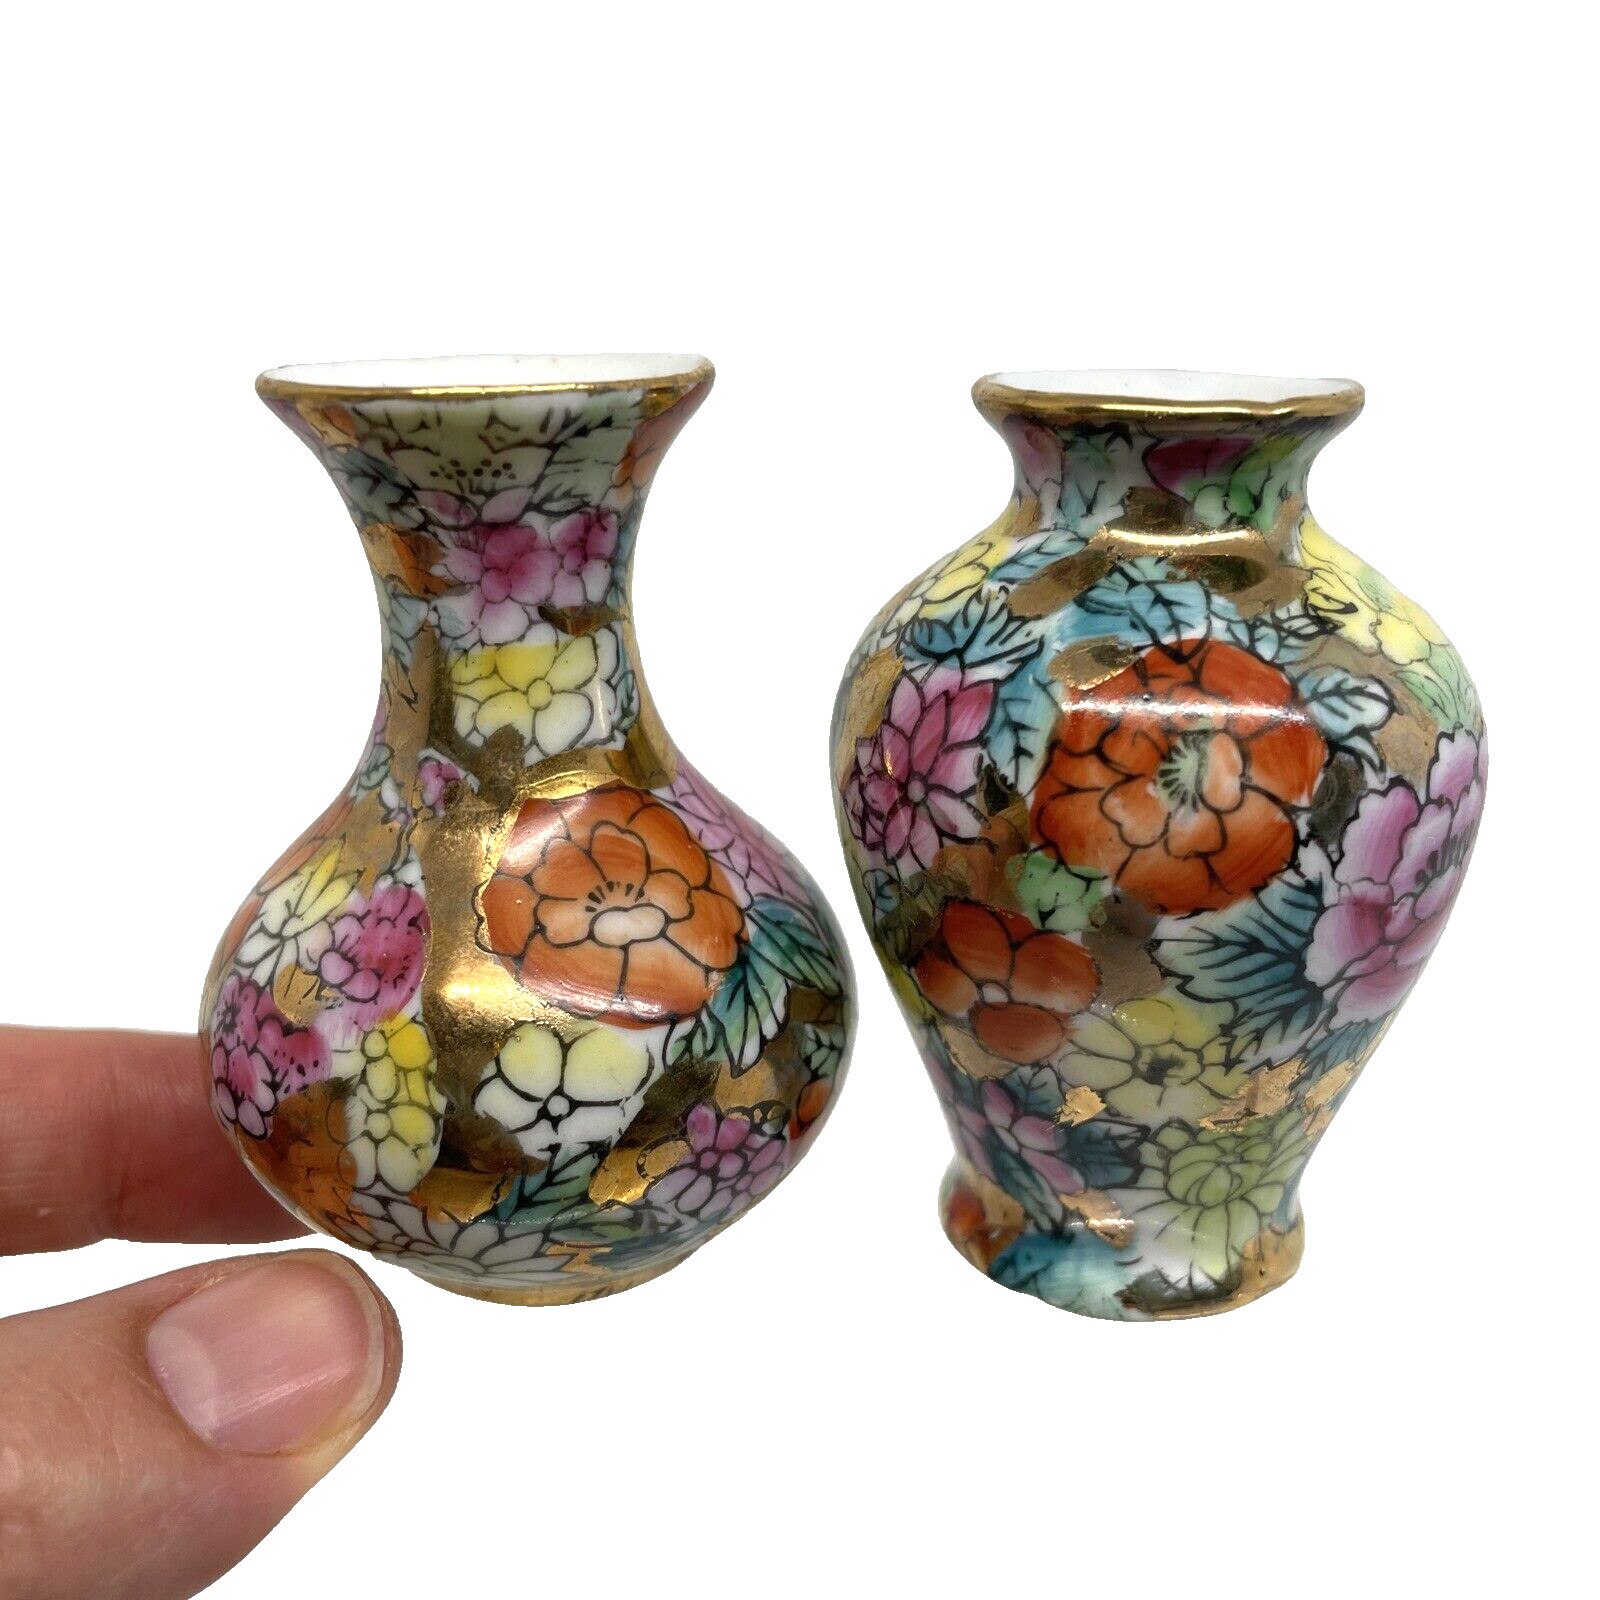 VTG Chinese Porcelain Miniature Cabinet Vases Set of 2 Mille Fleur Floral